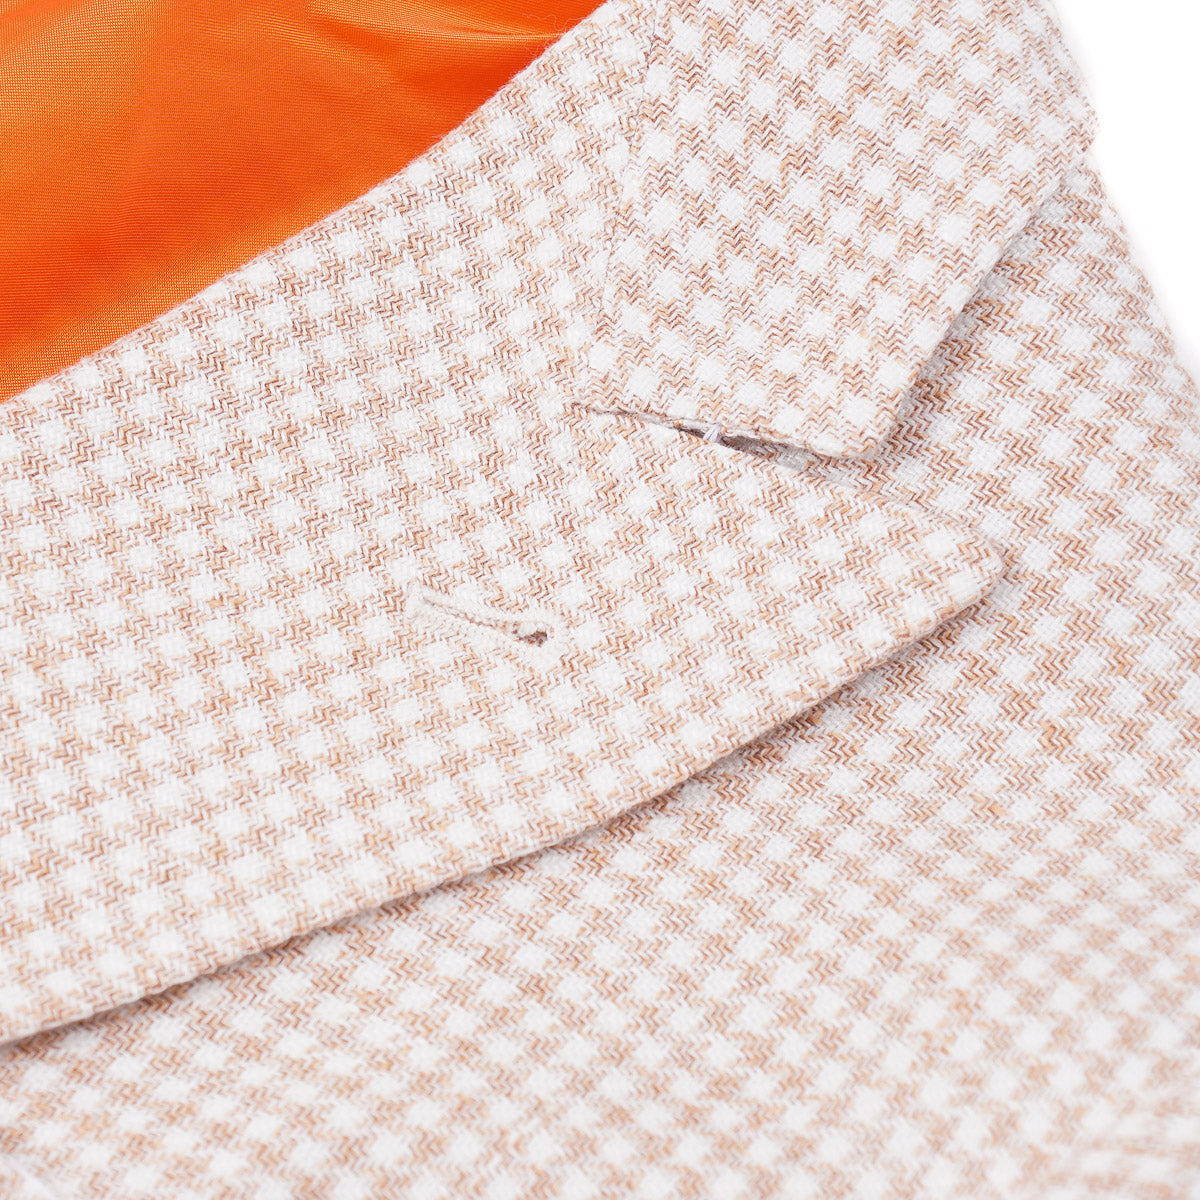 Sartorio Houndstooth Linen-Wool Sport Coat - Top Shelf Apparel